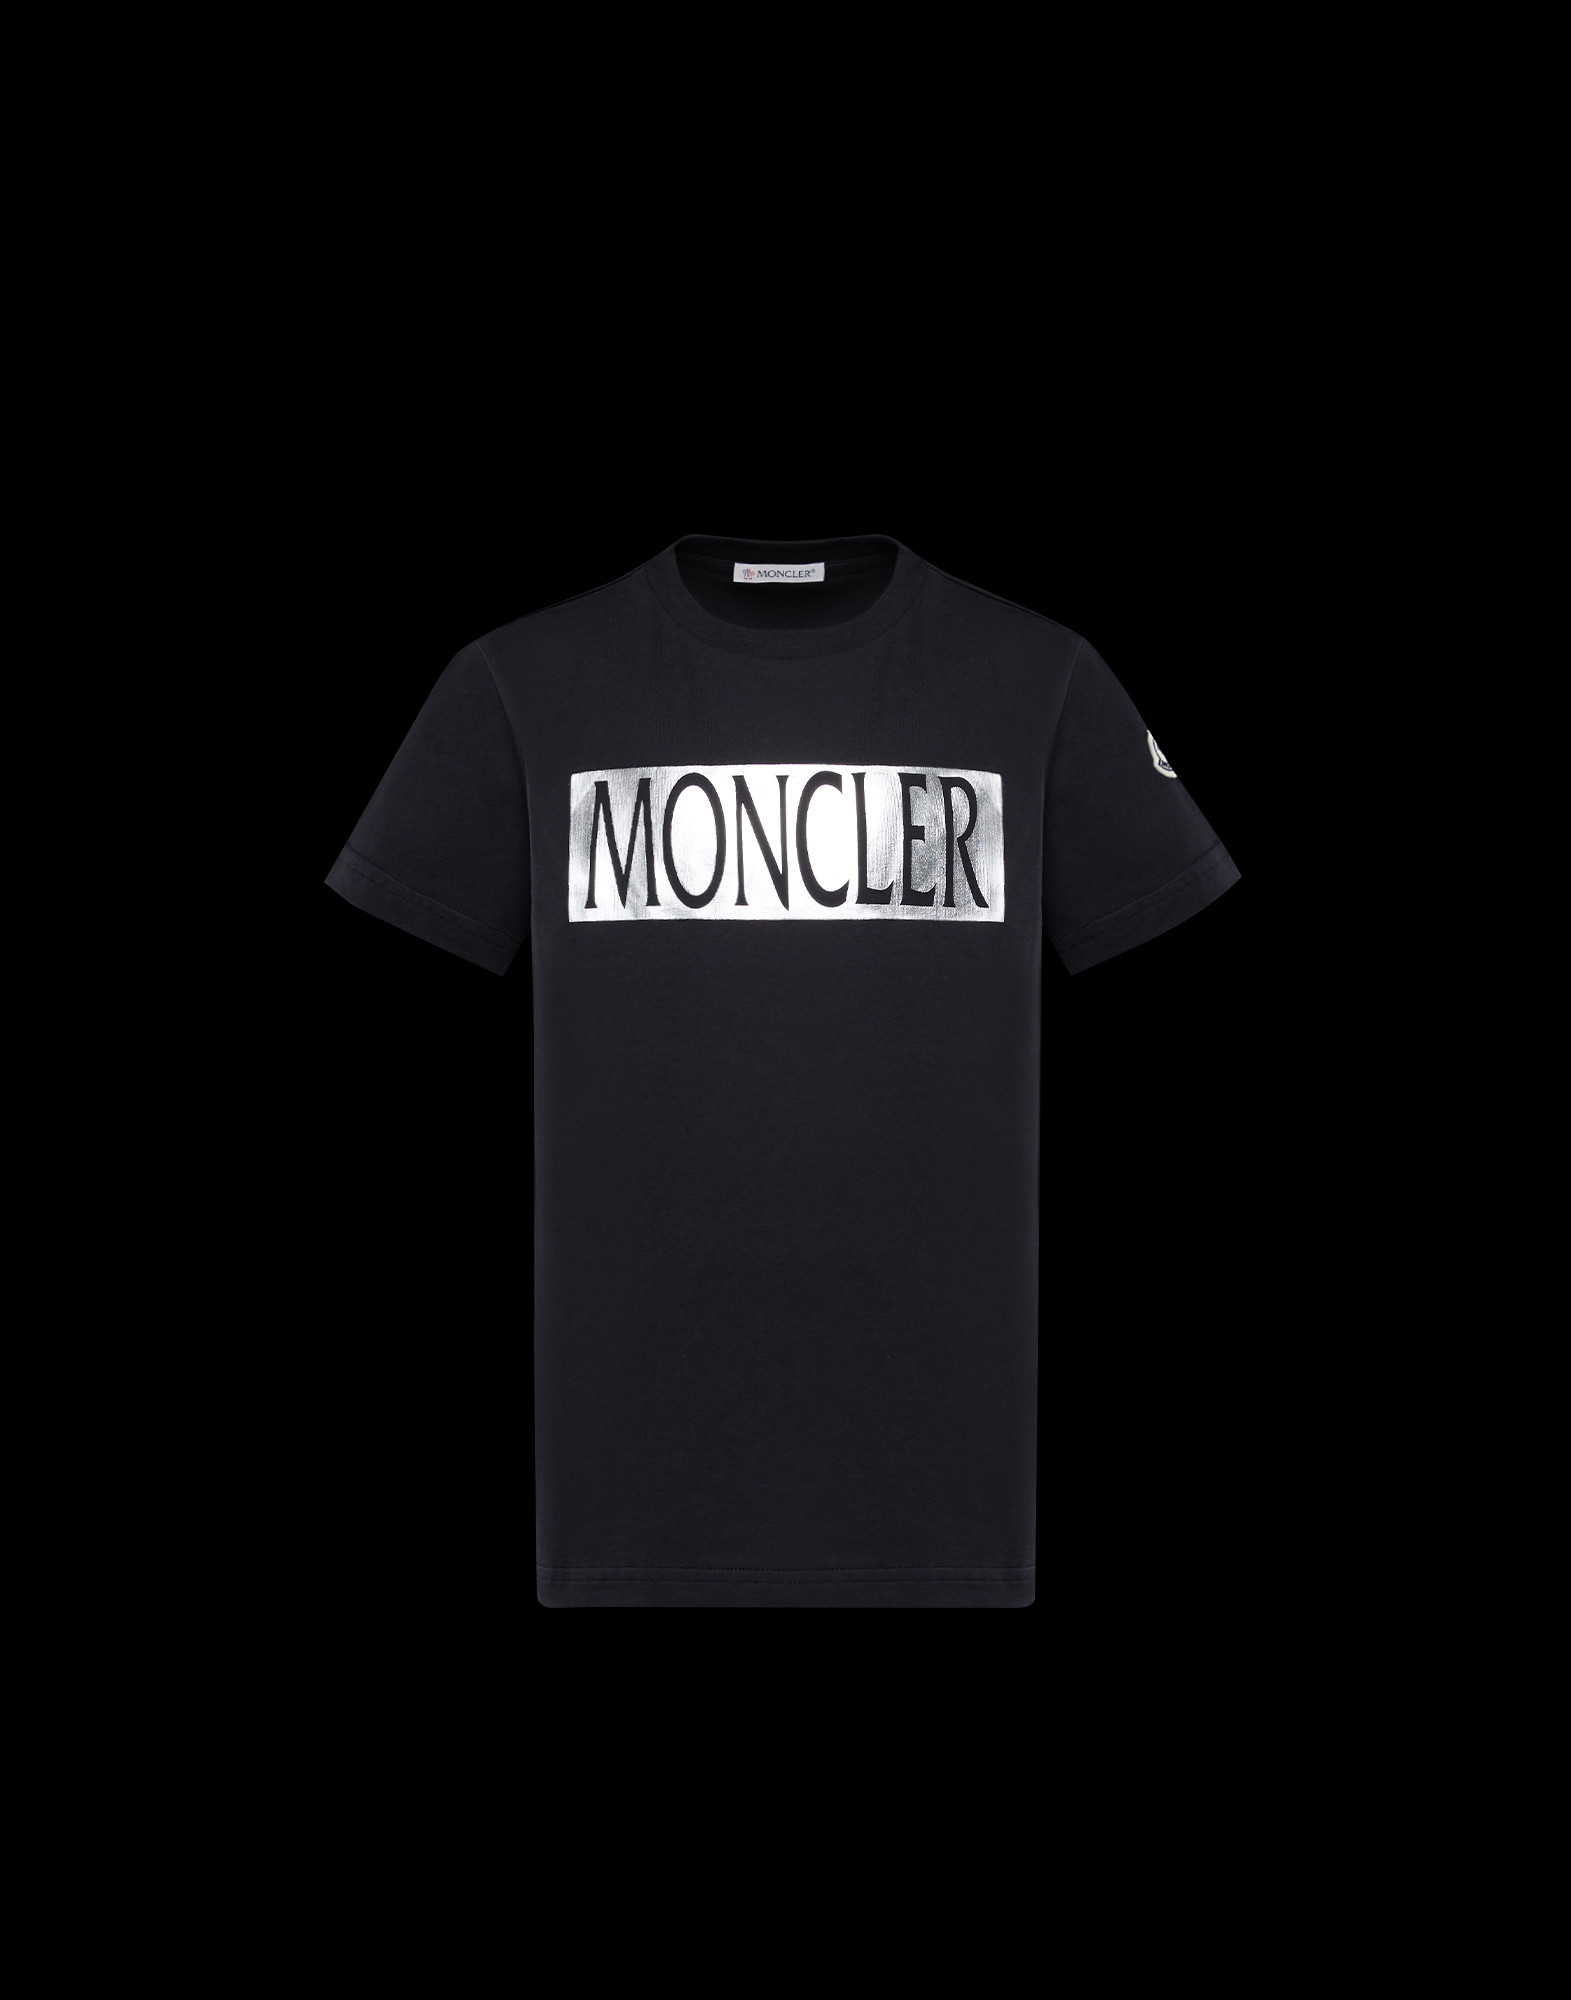 moncler t shirt cheap